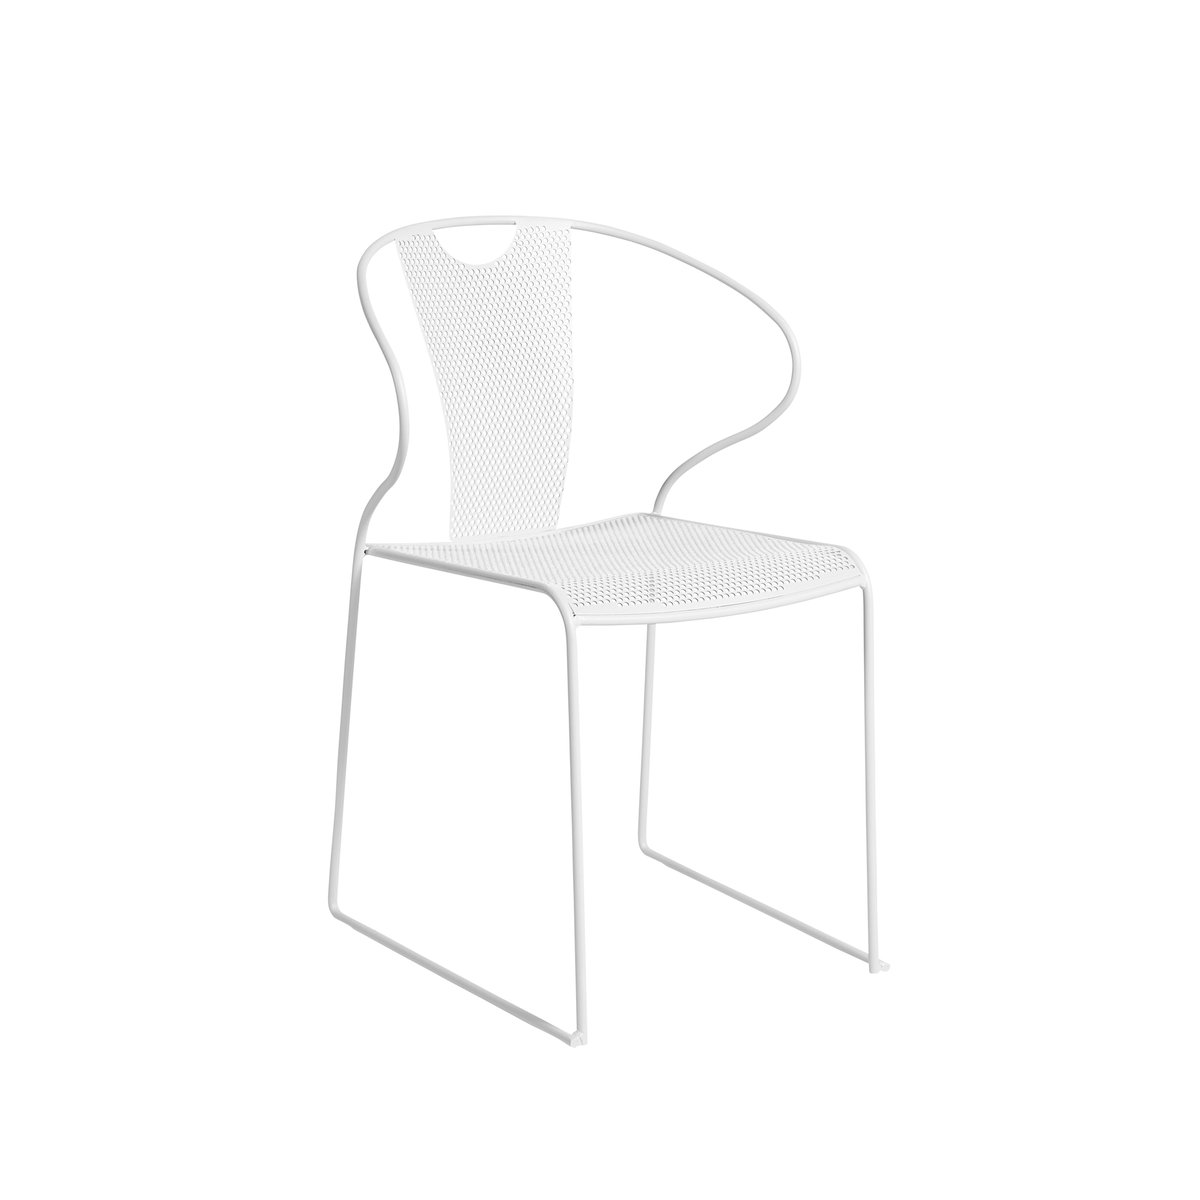 SMD Design Piazza stoel met armleuningen wit